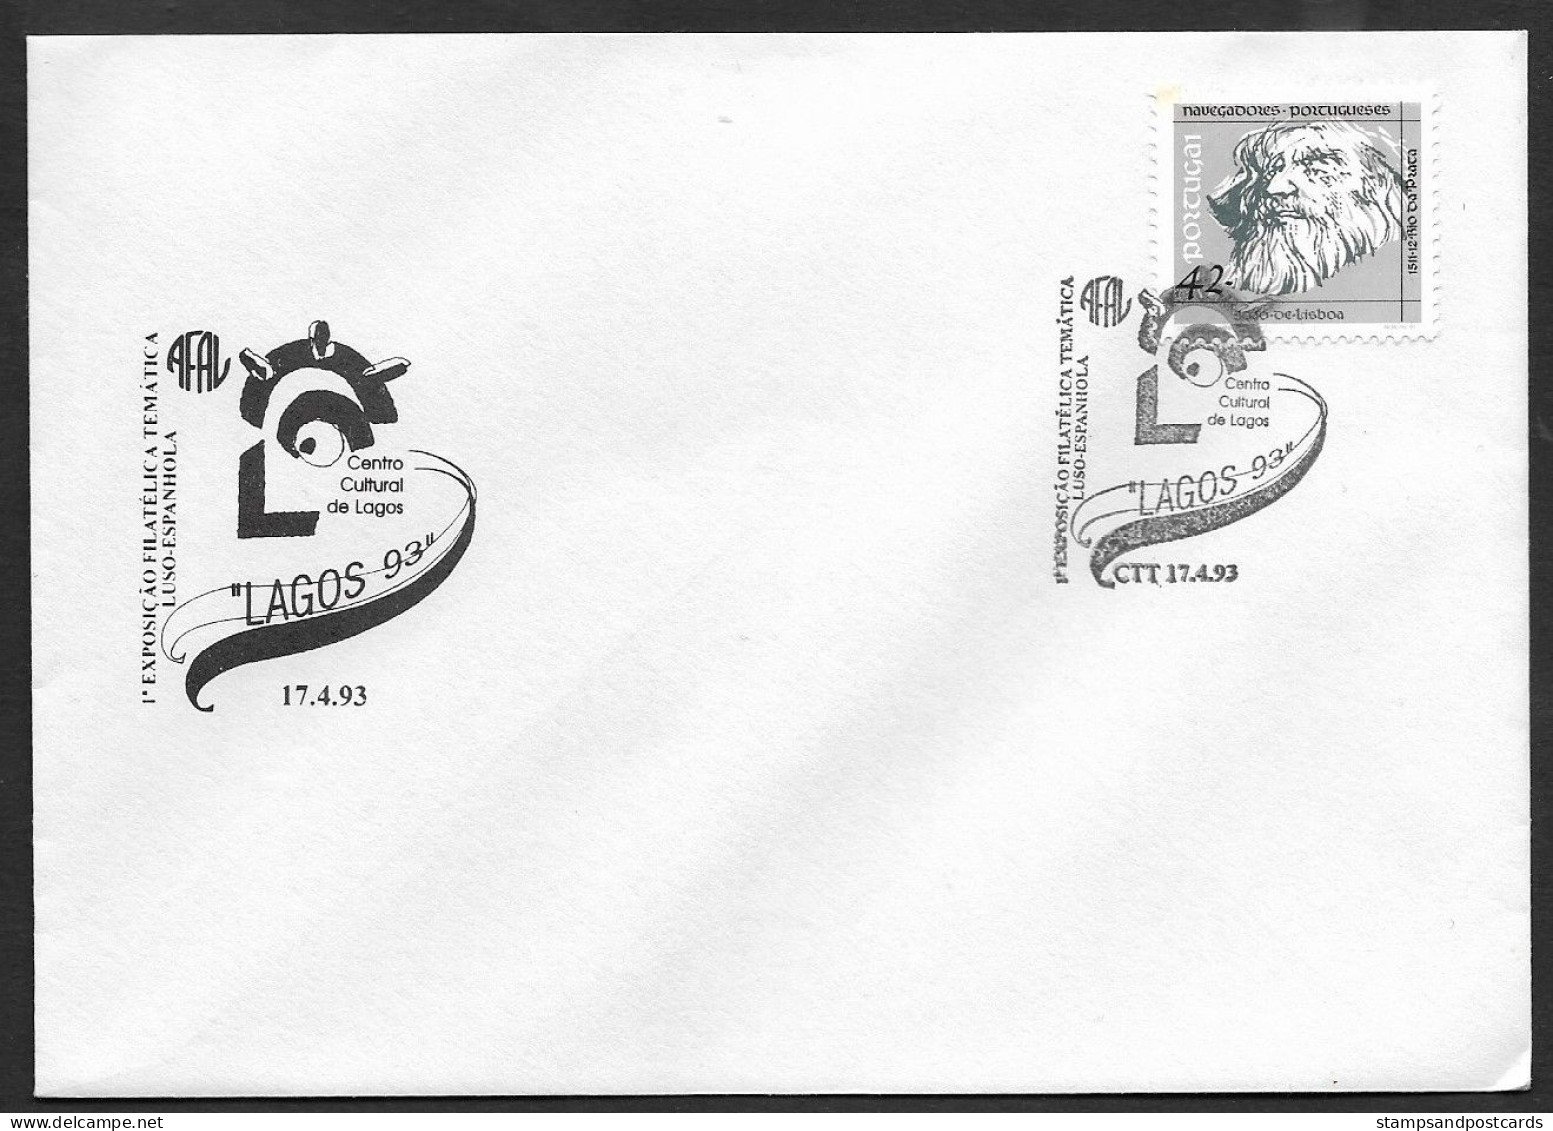 Portugal Lettre Cachet Commemoratif Lagos Algarve Expo Philatelique 1993 Event Cancel Cover Stamp Expo - Flammes & Oblitérations